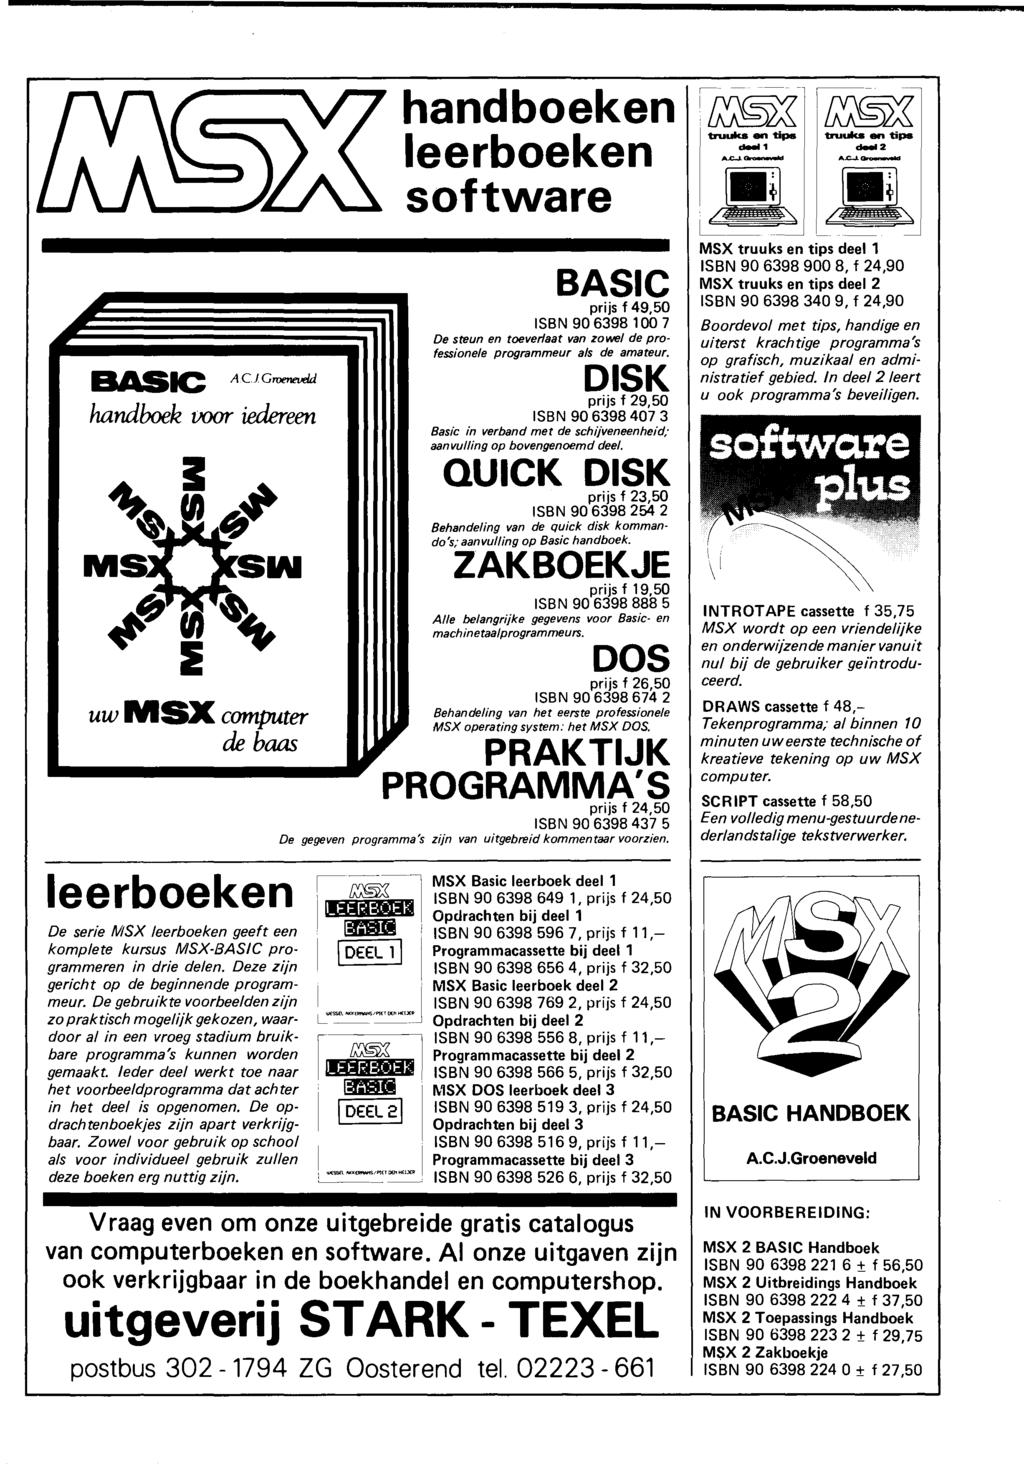 BASIC A Cl Groeneveld handboek voor iedereen uw MSX computer de baas leerboeken De serie MSX leerboeken geeft een kompie te kursus MSX-BASIC programmeren jn drie delen.